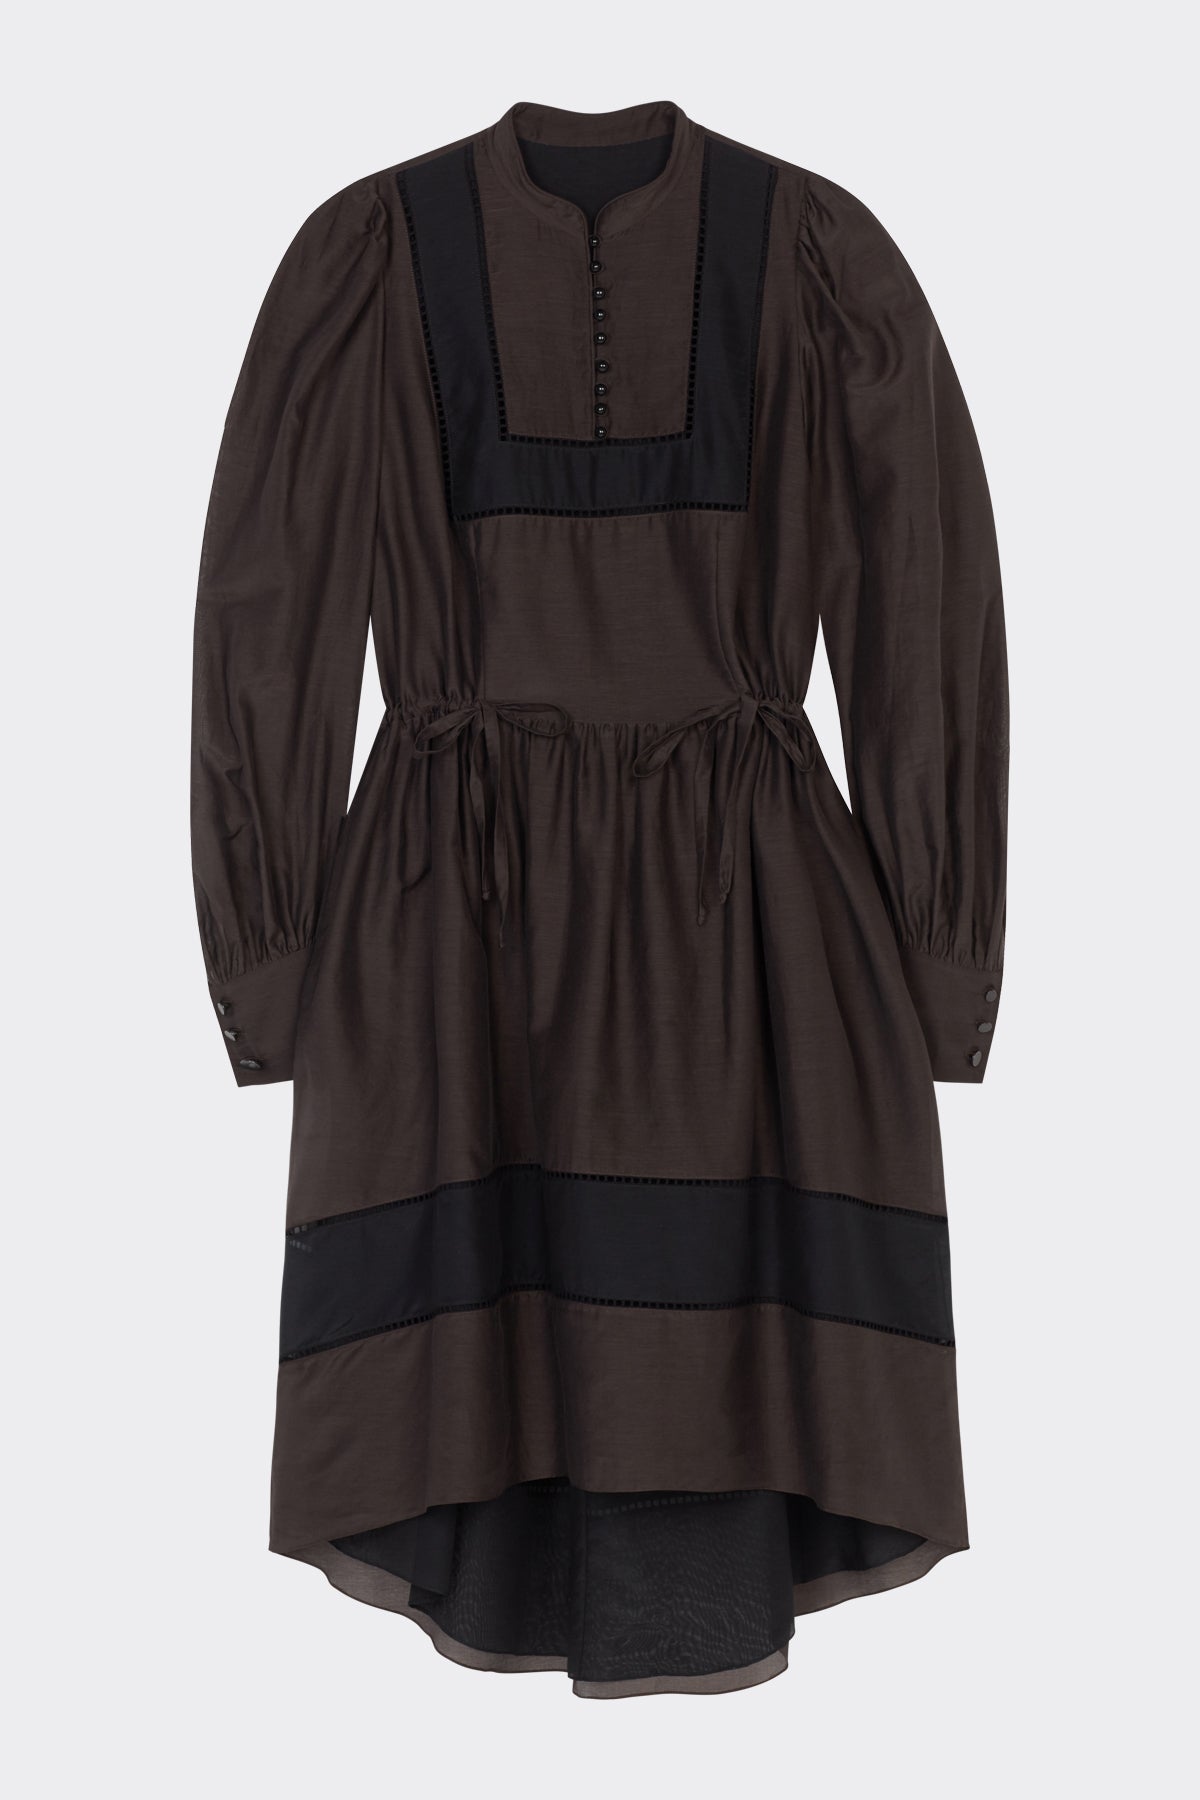 Pippa Dress in Brown Black | Noon By Noor